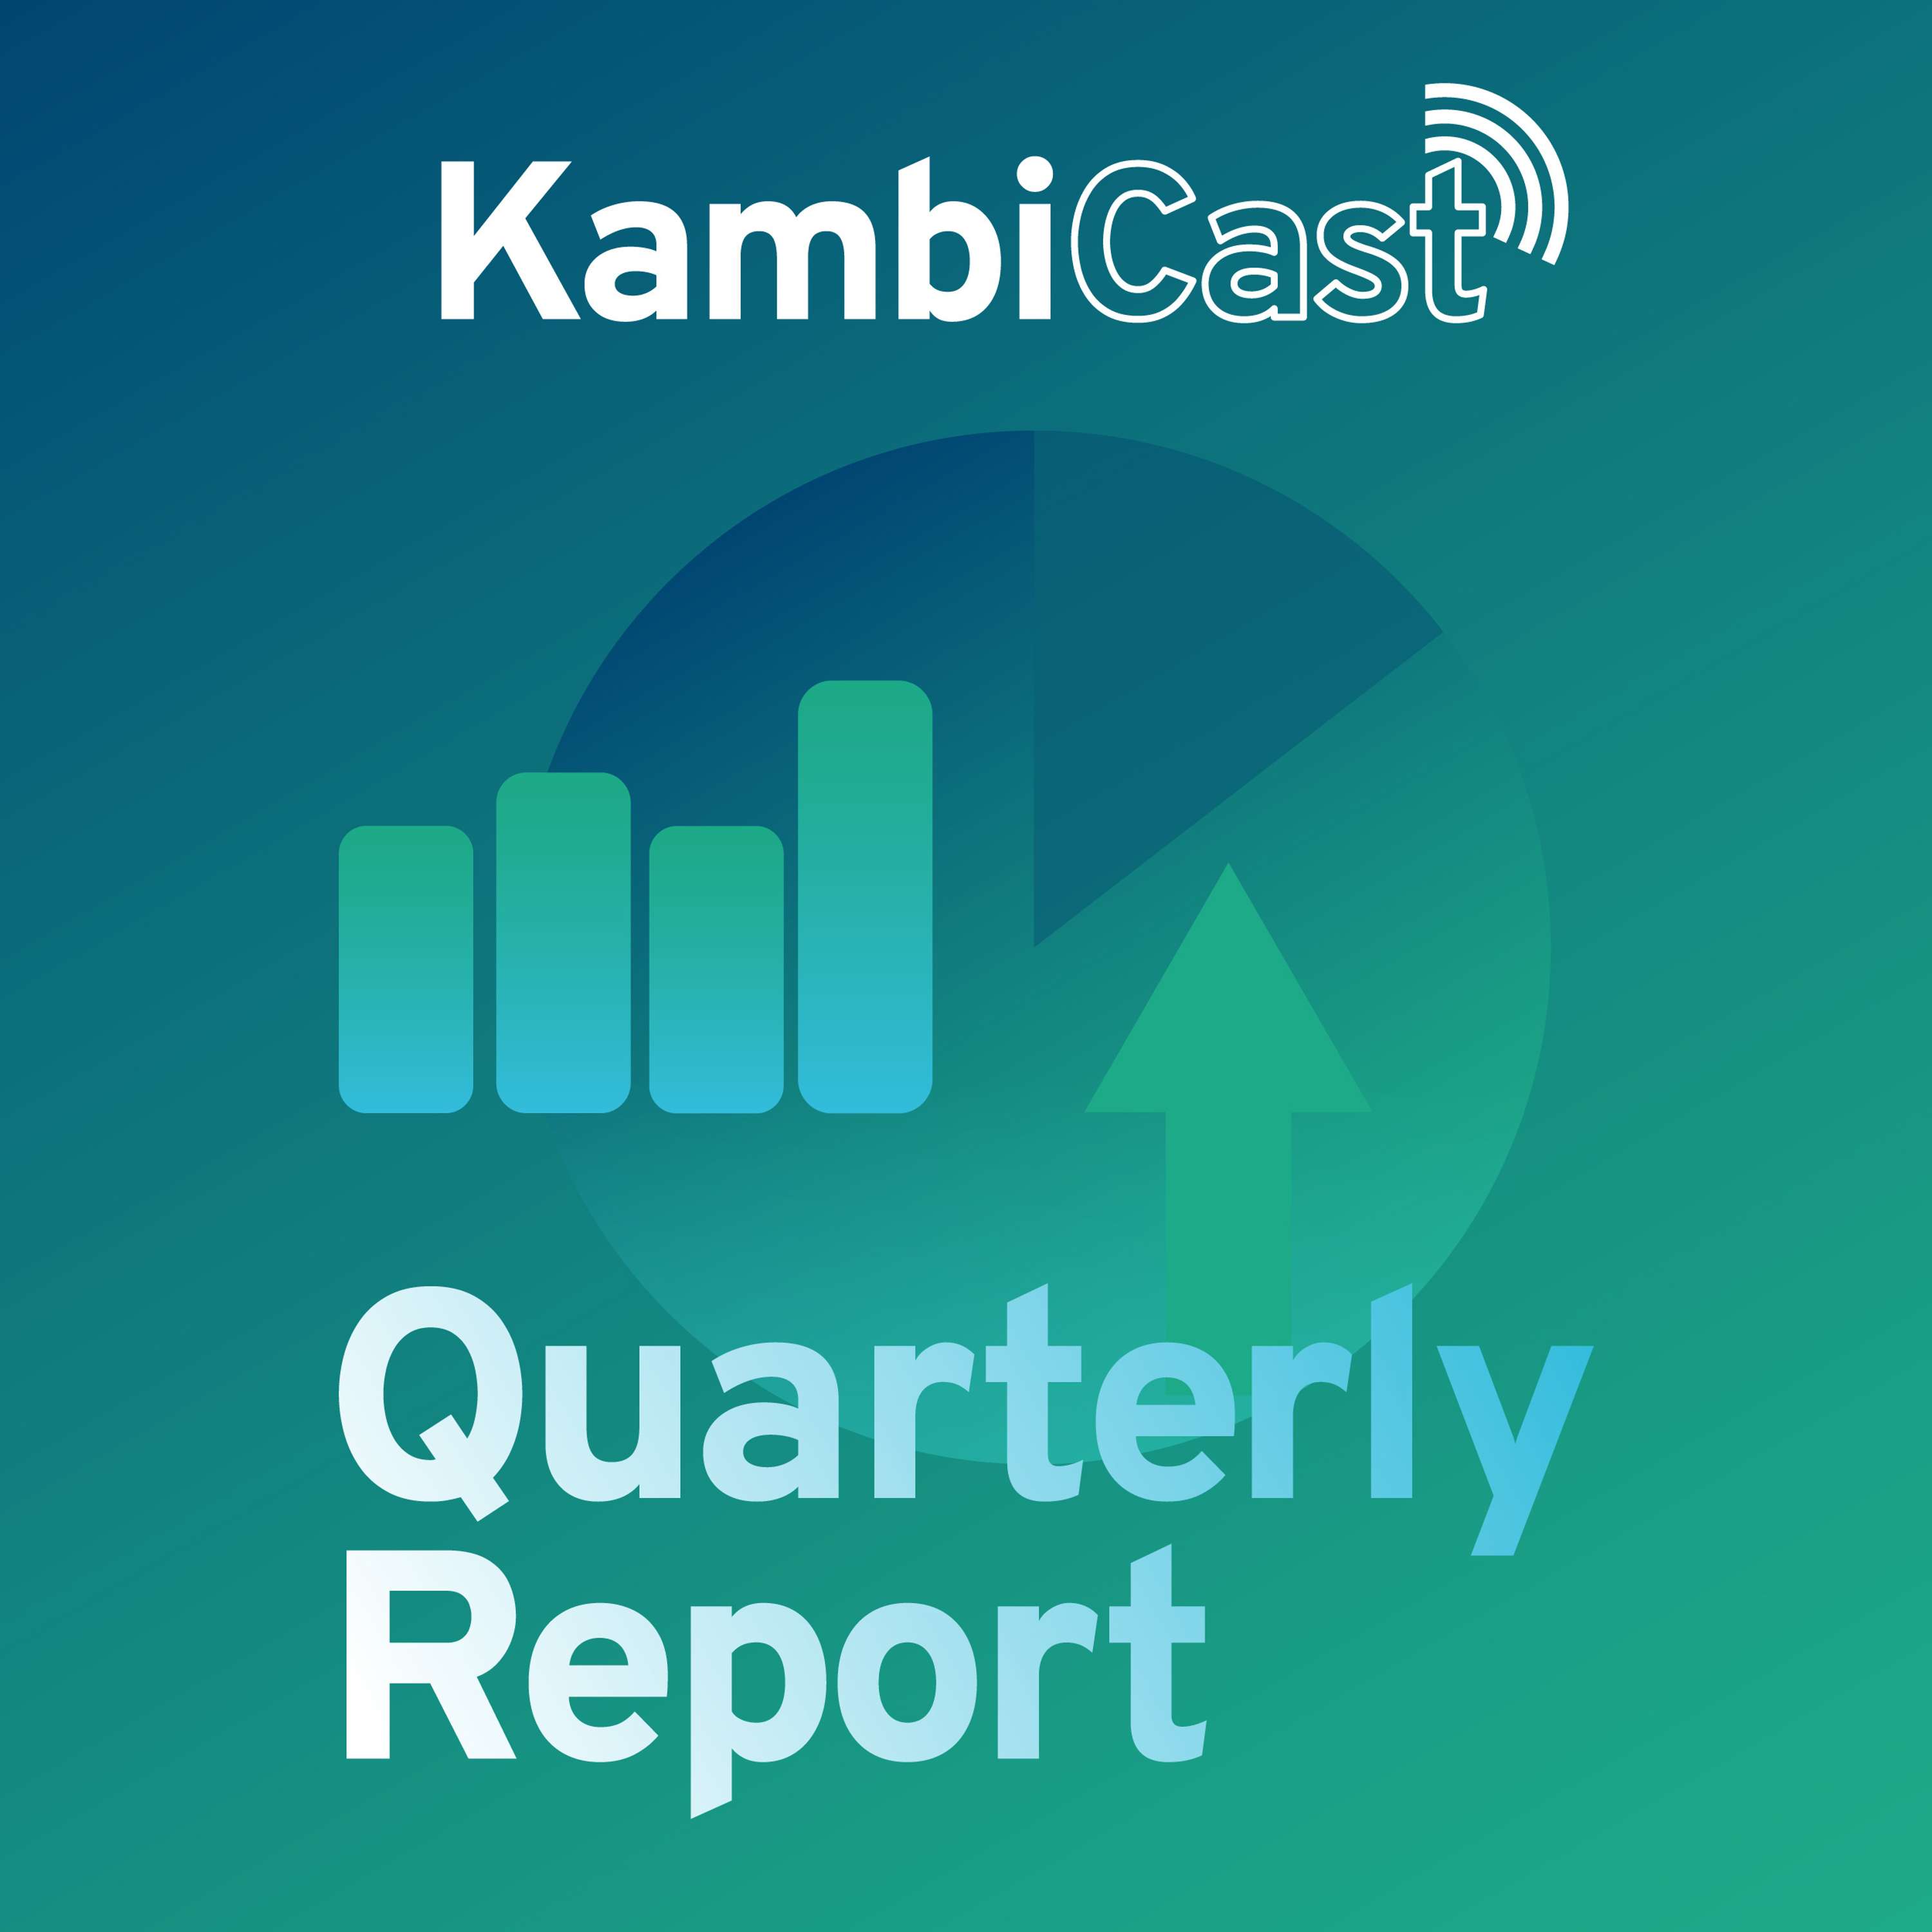 Kambi quarterly results podcast - Q4 2021